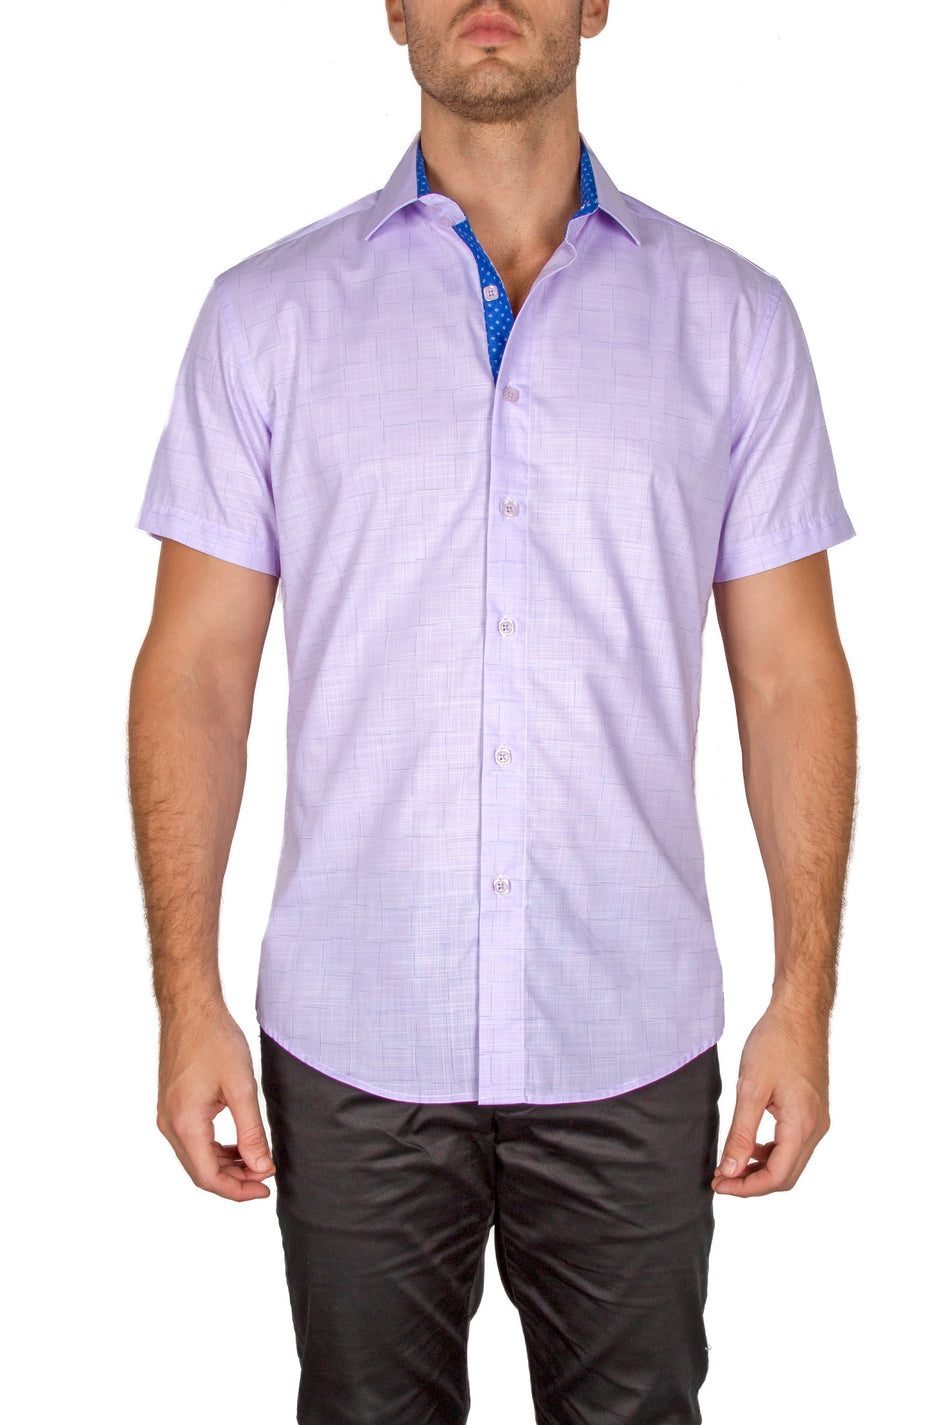 182114-mens-lilac-button-up-short-sleeve-dress-shirt